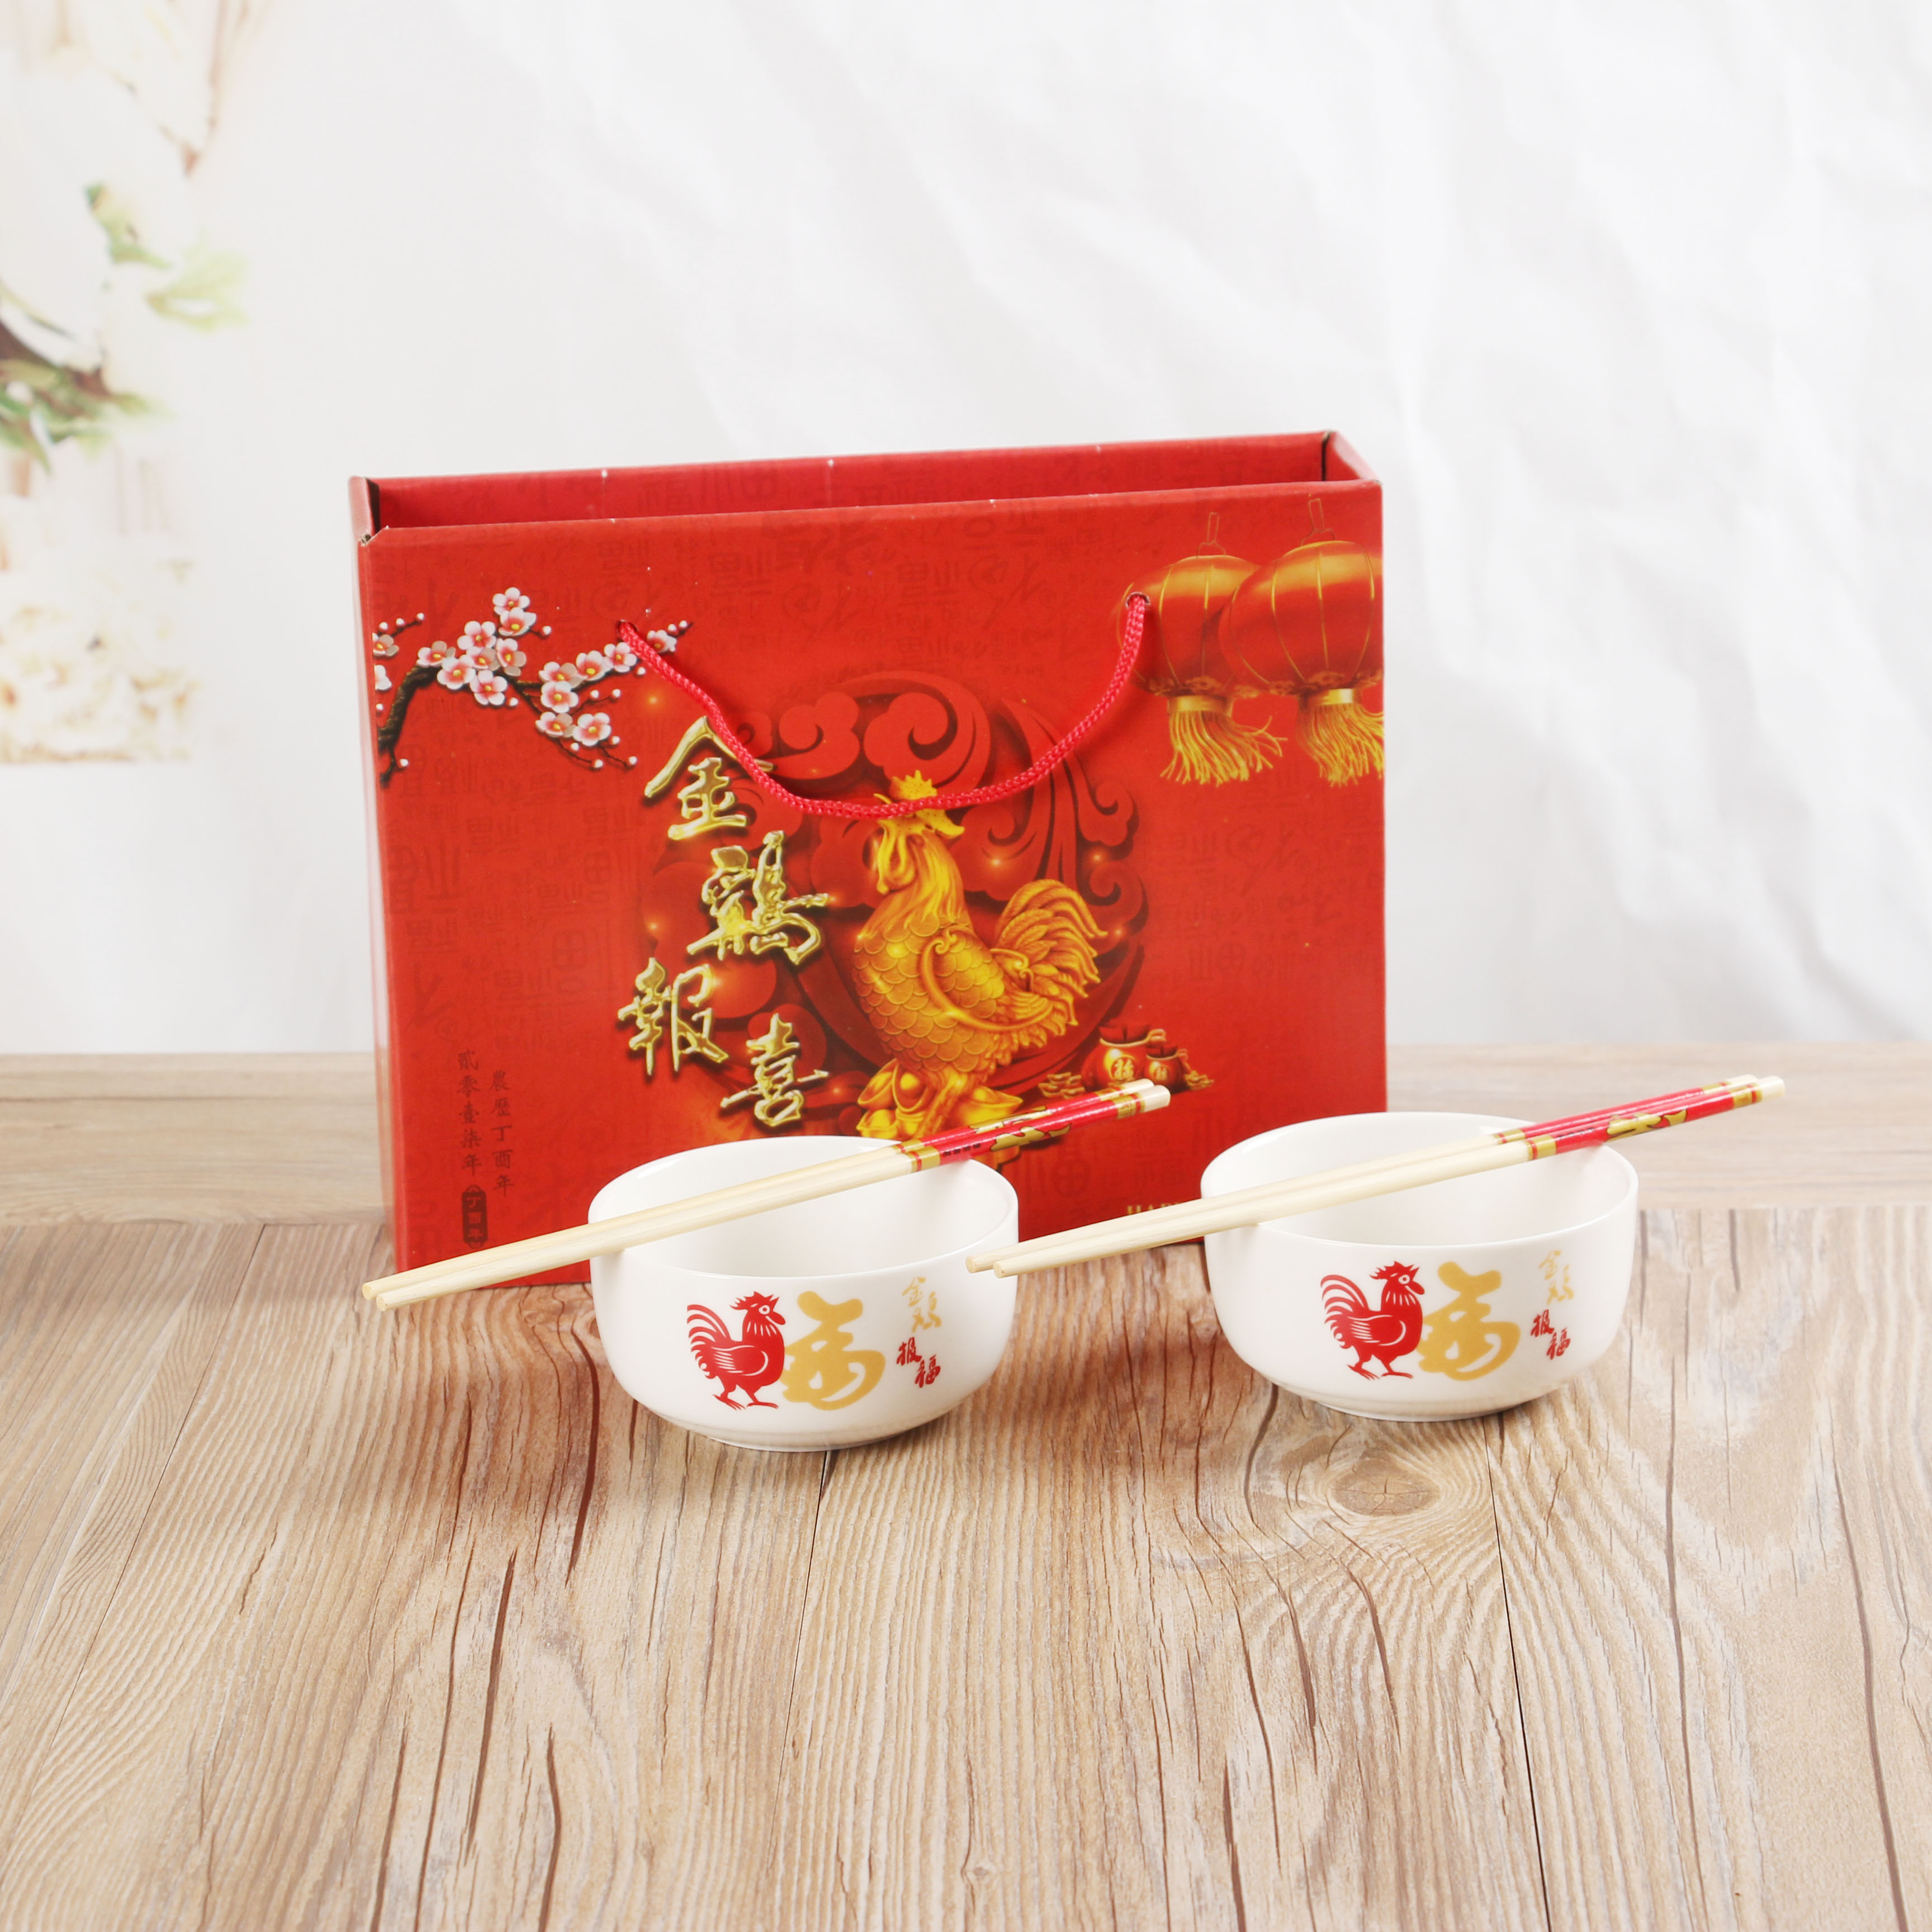 金鸡报晓两碗两筷套装餐具 陶瓷日式碗勺礼品 碗筷套装 创意喜庆礼